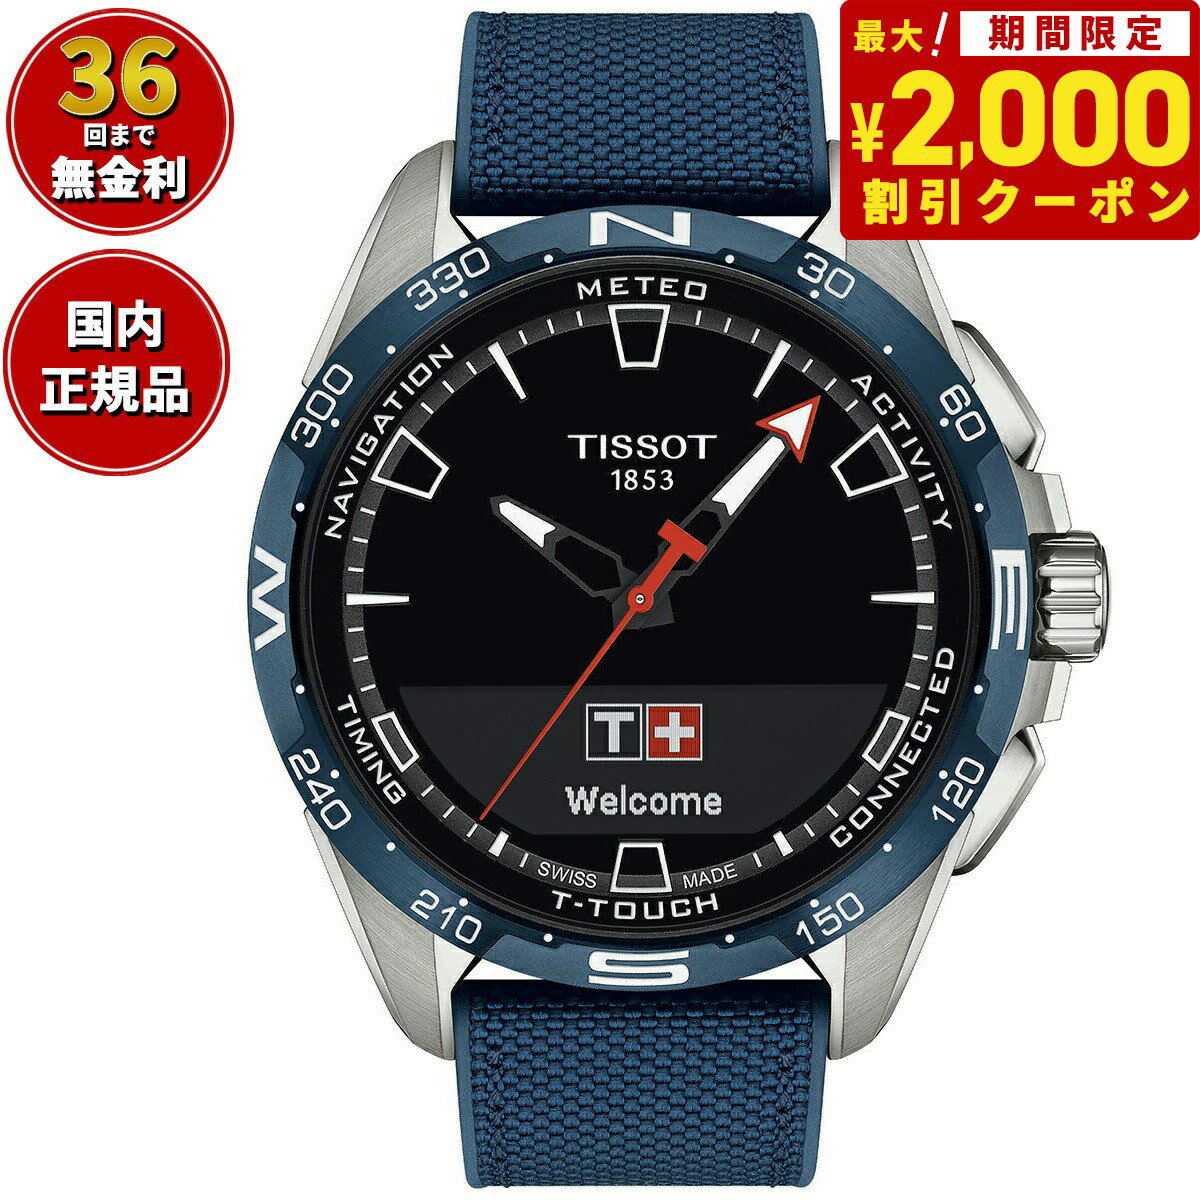 ティソ TISSOT T-タッチ コネクト ソーラー T121.420.47.051.06 腕時計 メンズ タッチセンサー式 スマートフォン連動 チタン T-TOUCH CONNECT SOLAR